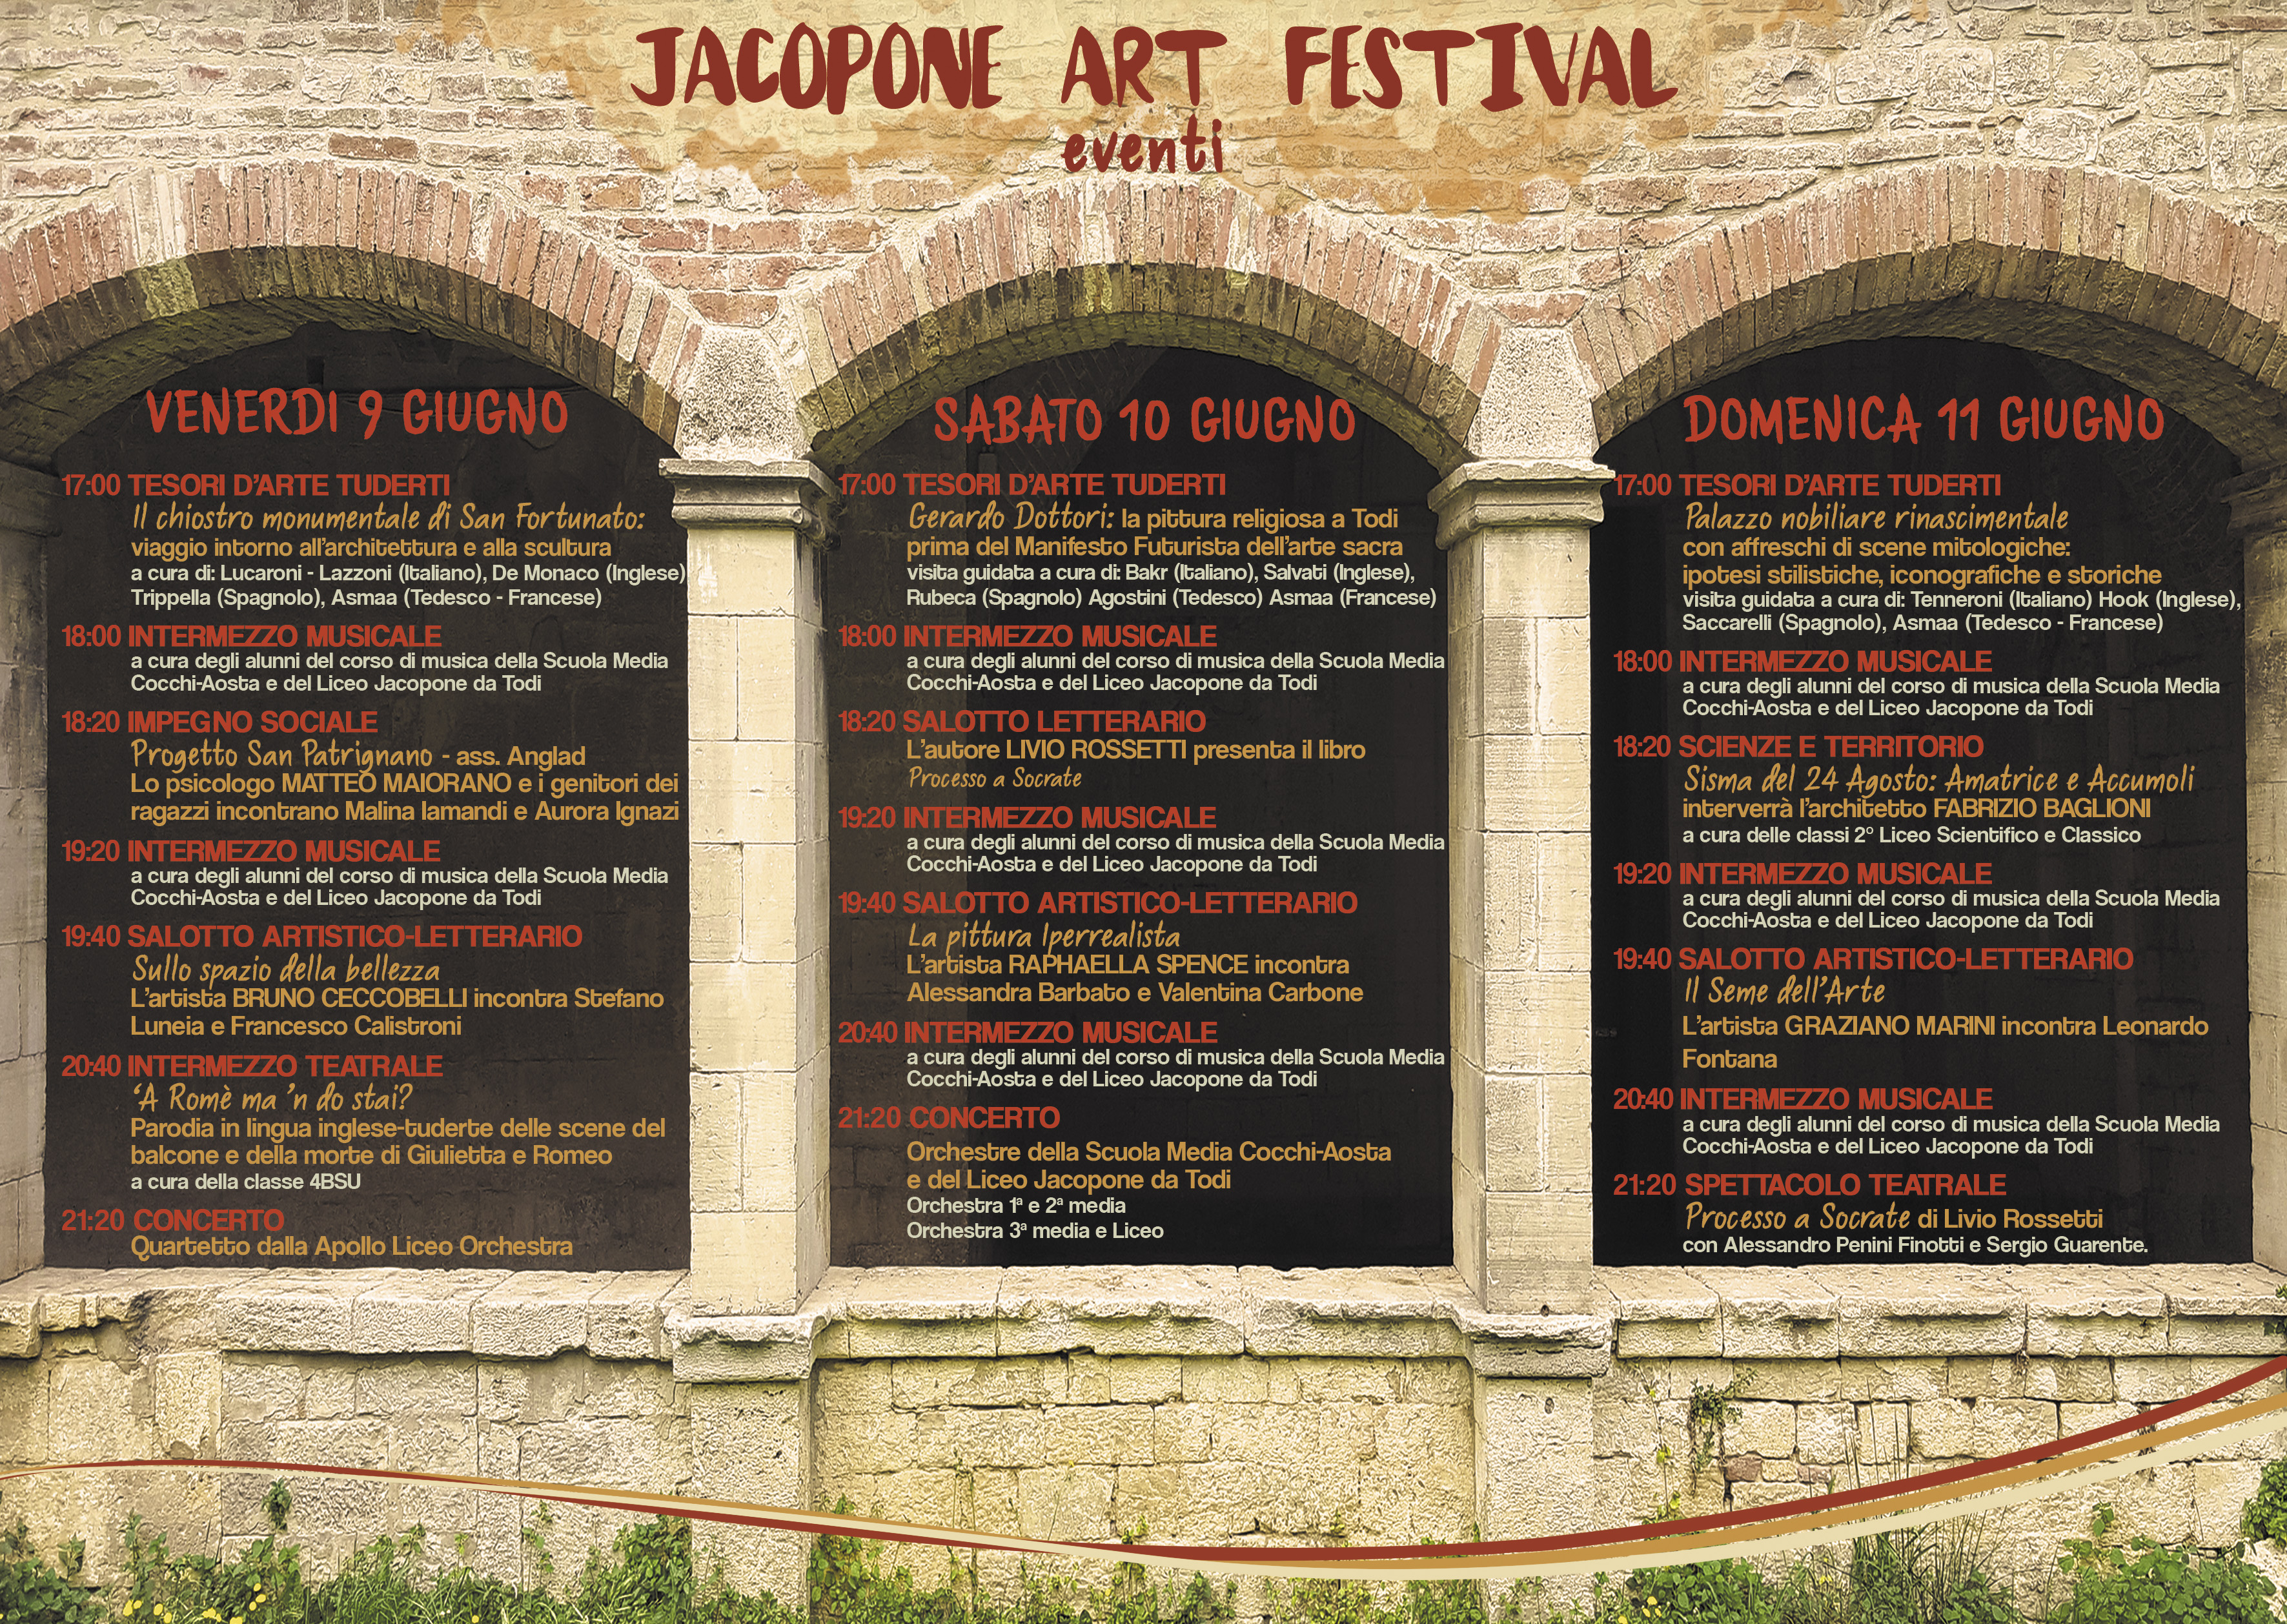 LICEO JACOPONE DA TODI PROGRAMMA DELLO JACOPONE ART FESTIVAL